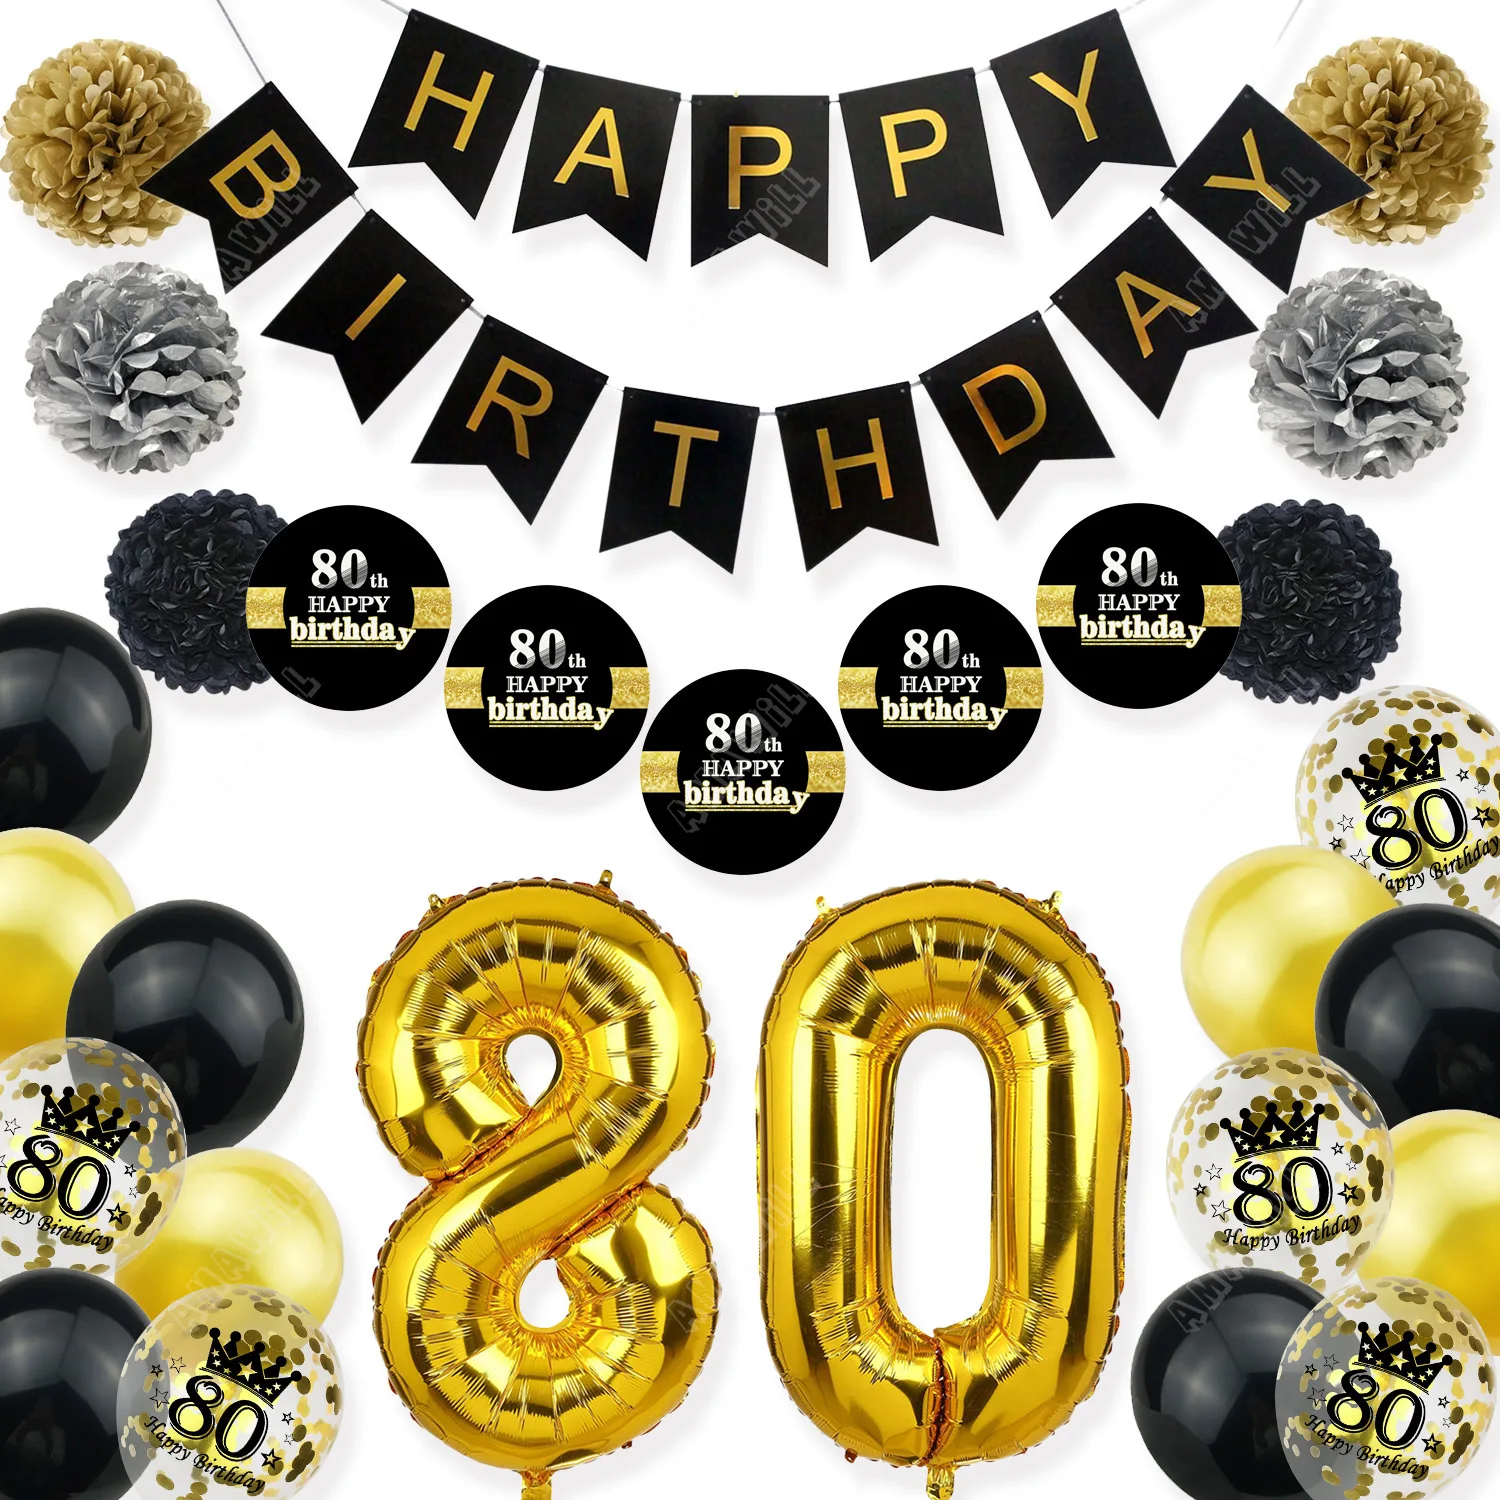 Amawill 80th Birthday Party Decoration Kit Черный Баннер С Днем Рождения, Бумажные Наклейки С Цветами, Золотые Принадлежности для Вечеринок 80-летней Давности